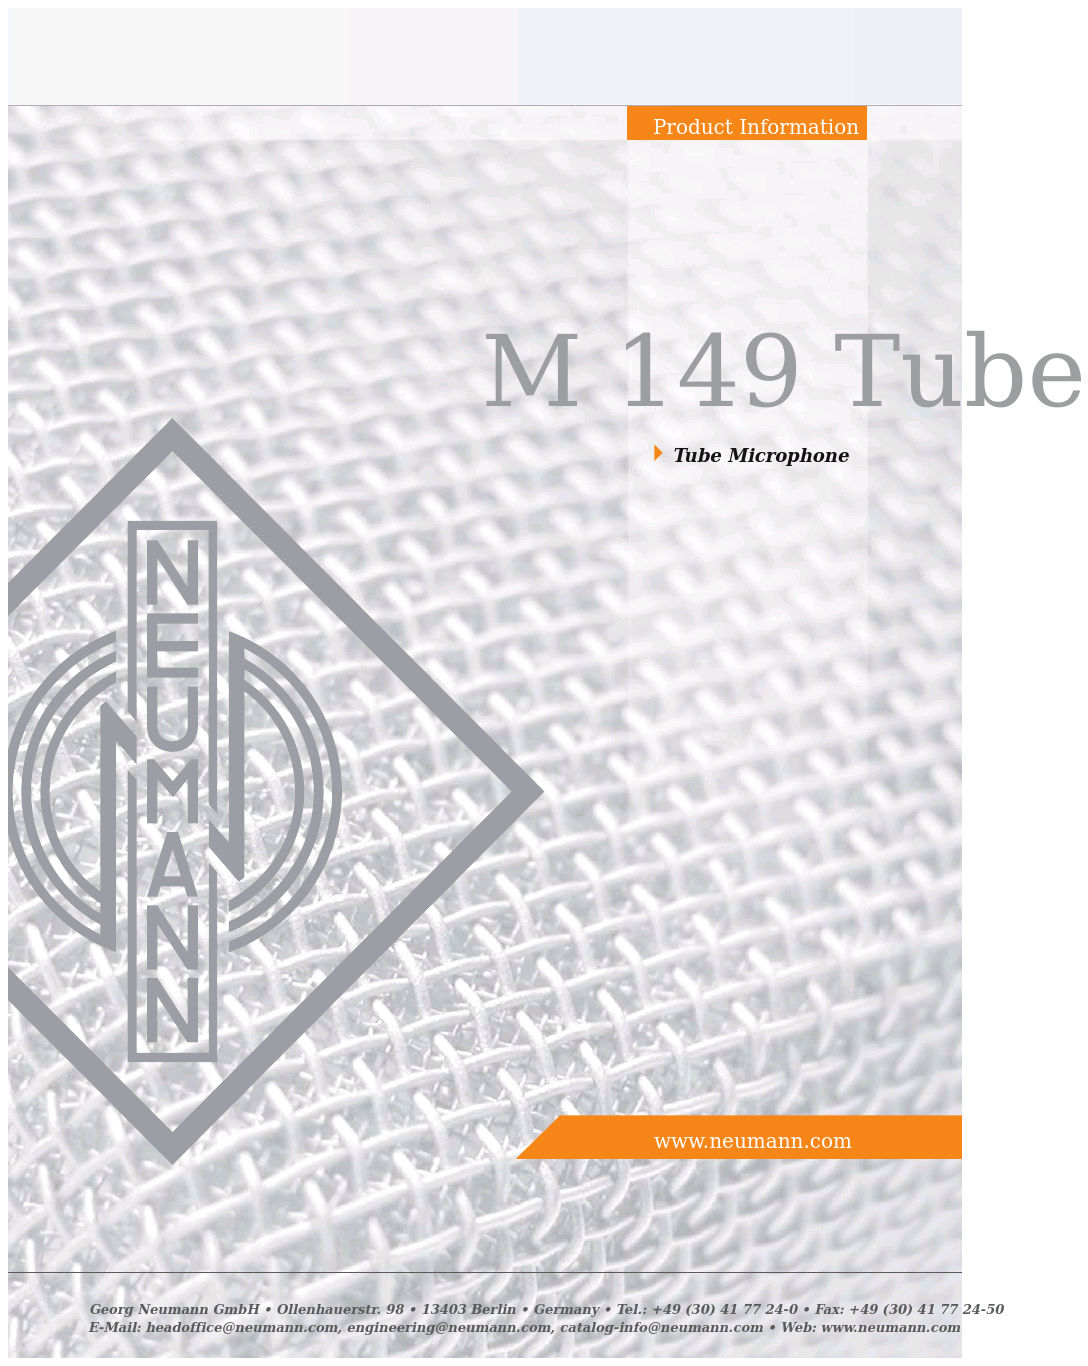 M 149 Tube